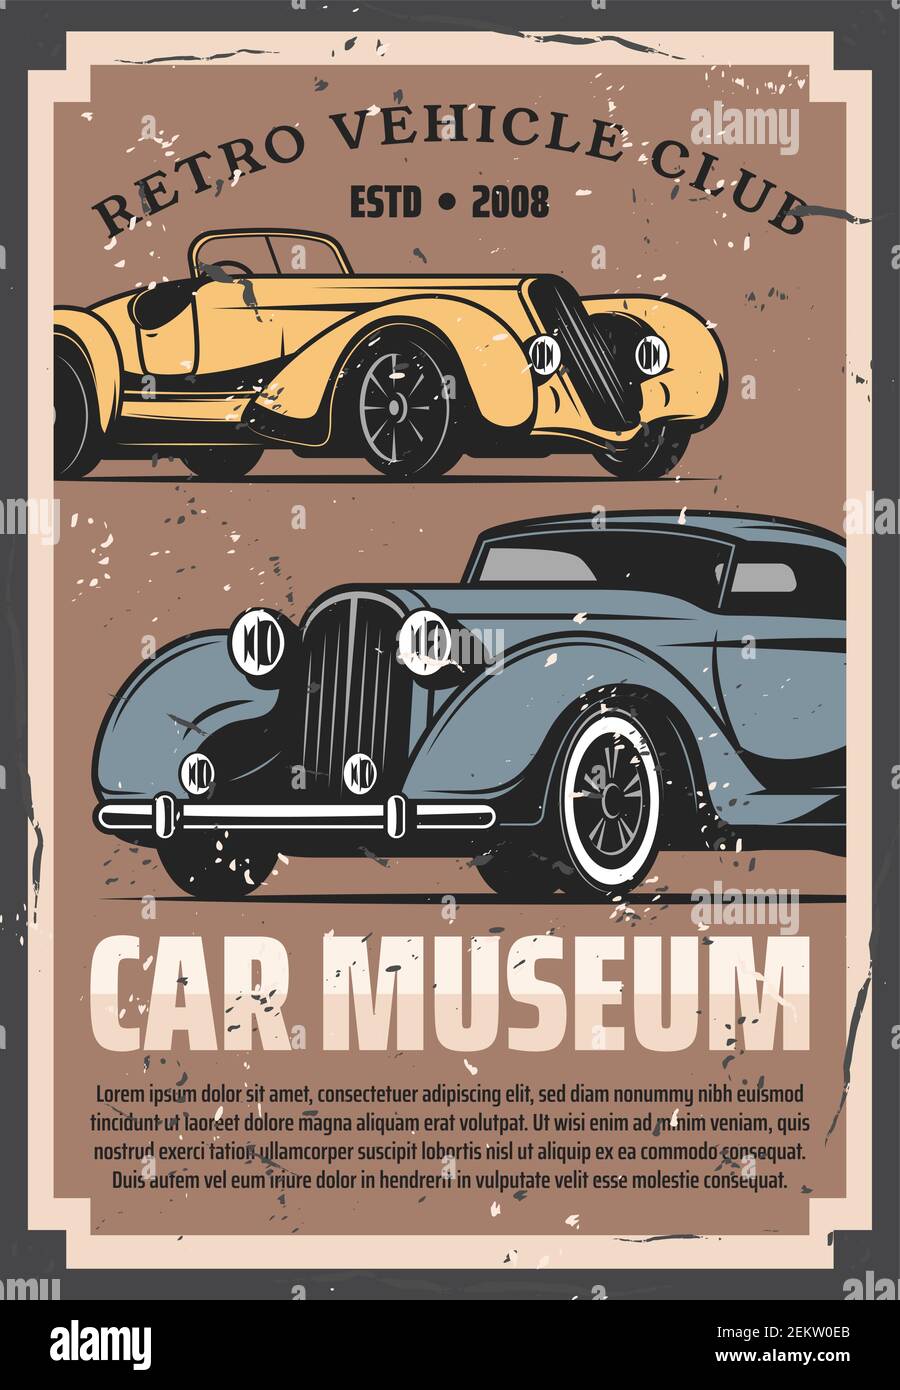 Mostra d'auto d'epoca e museo dei motori di rarità, poster vettoriali di veicoli retrò. Servizio di ripristino e messa a punto del vecchio timer, centro auto e mecc Illustrazione Vettoriale